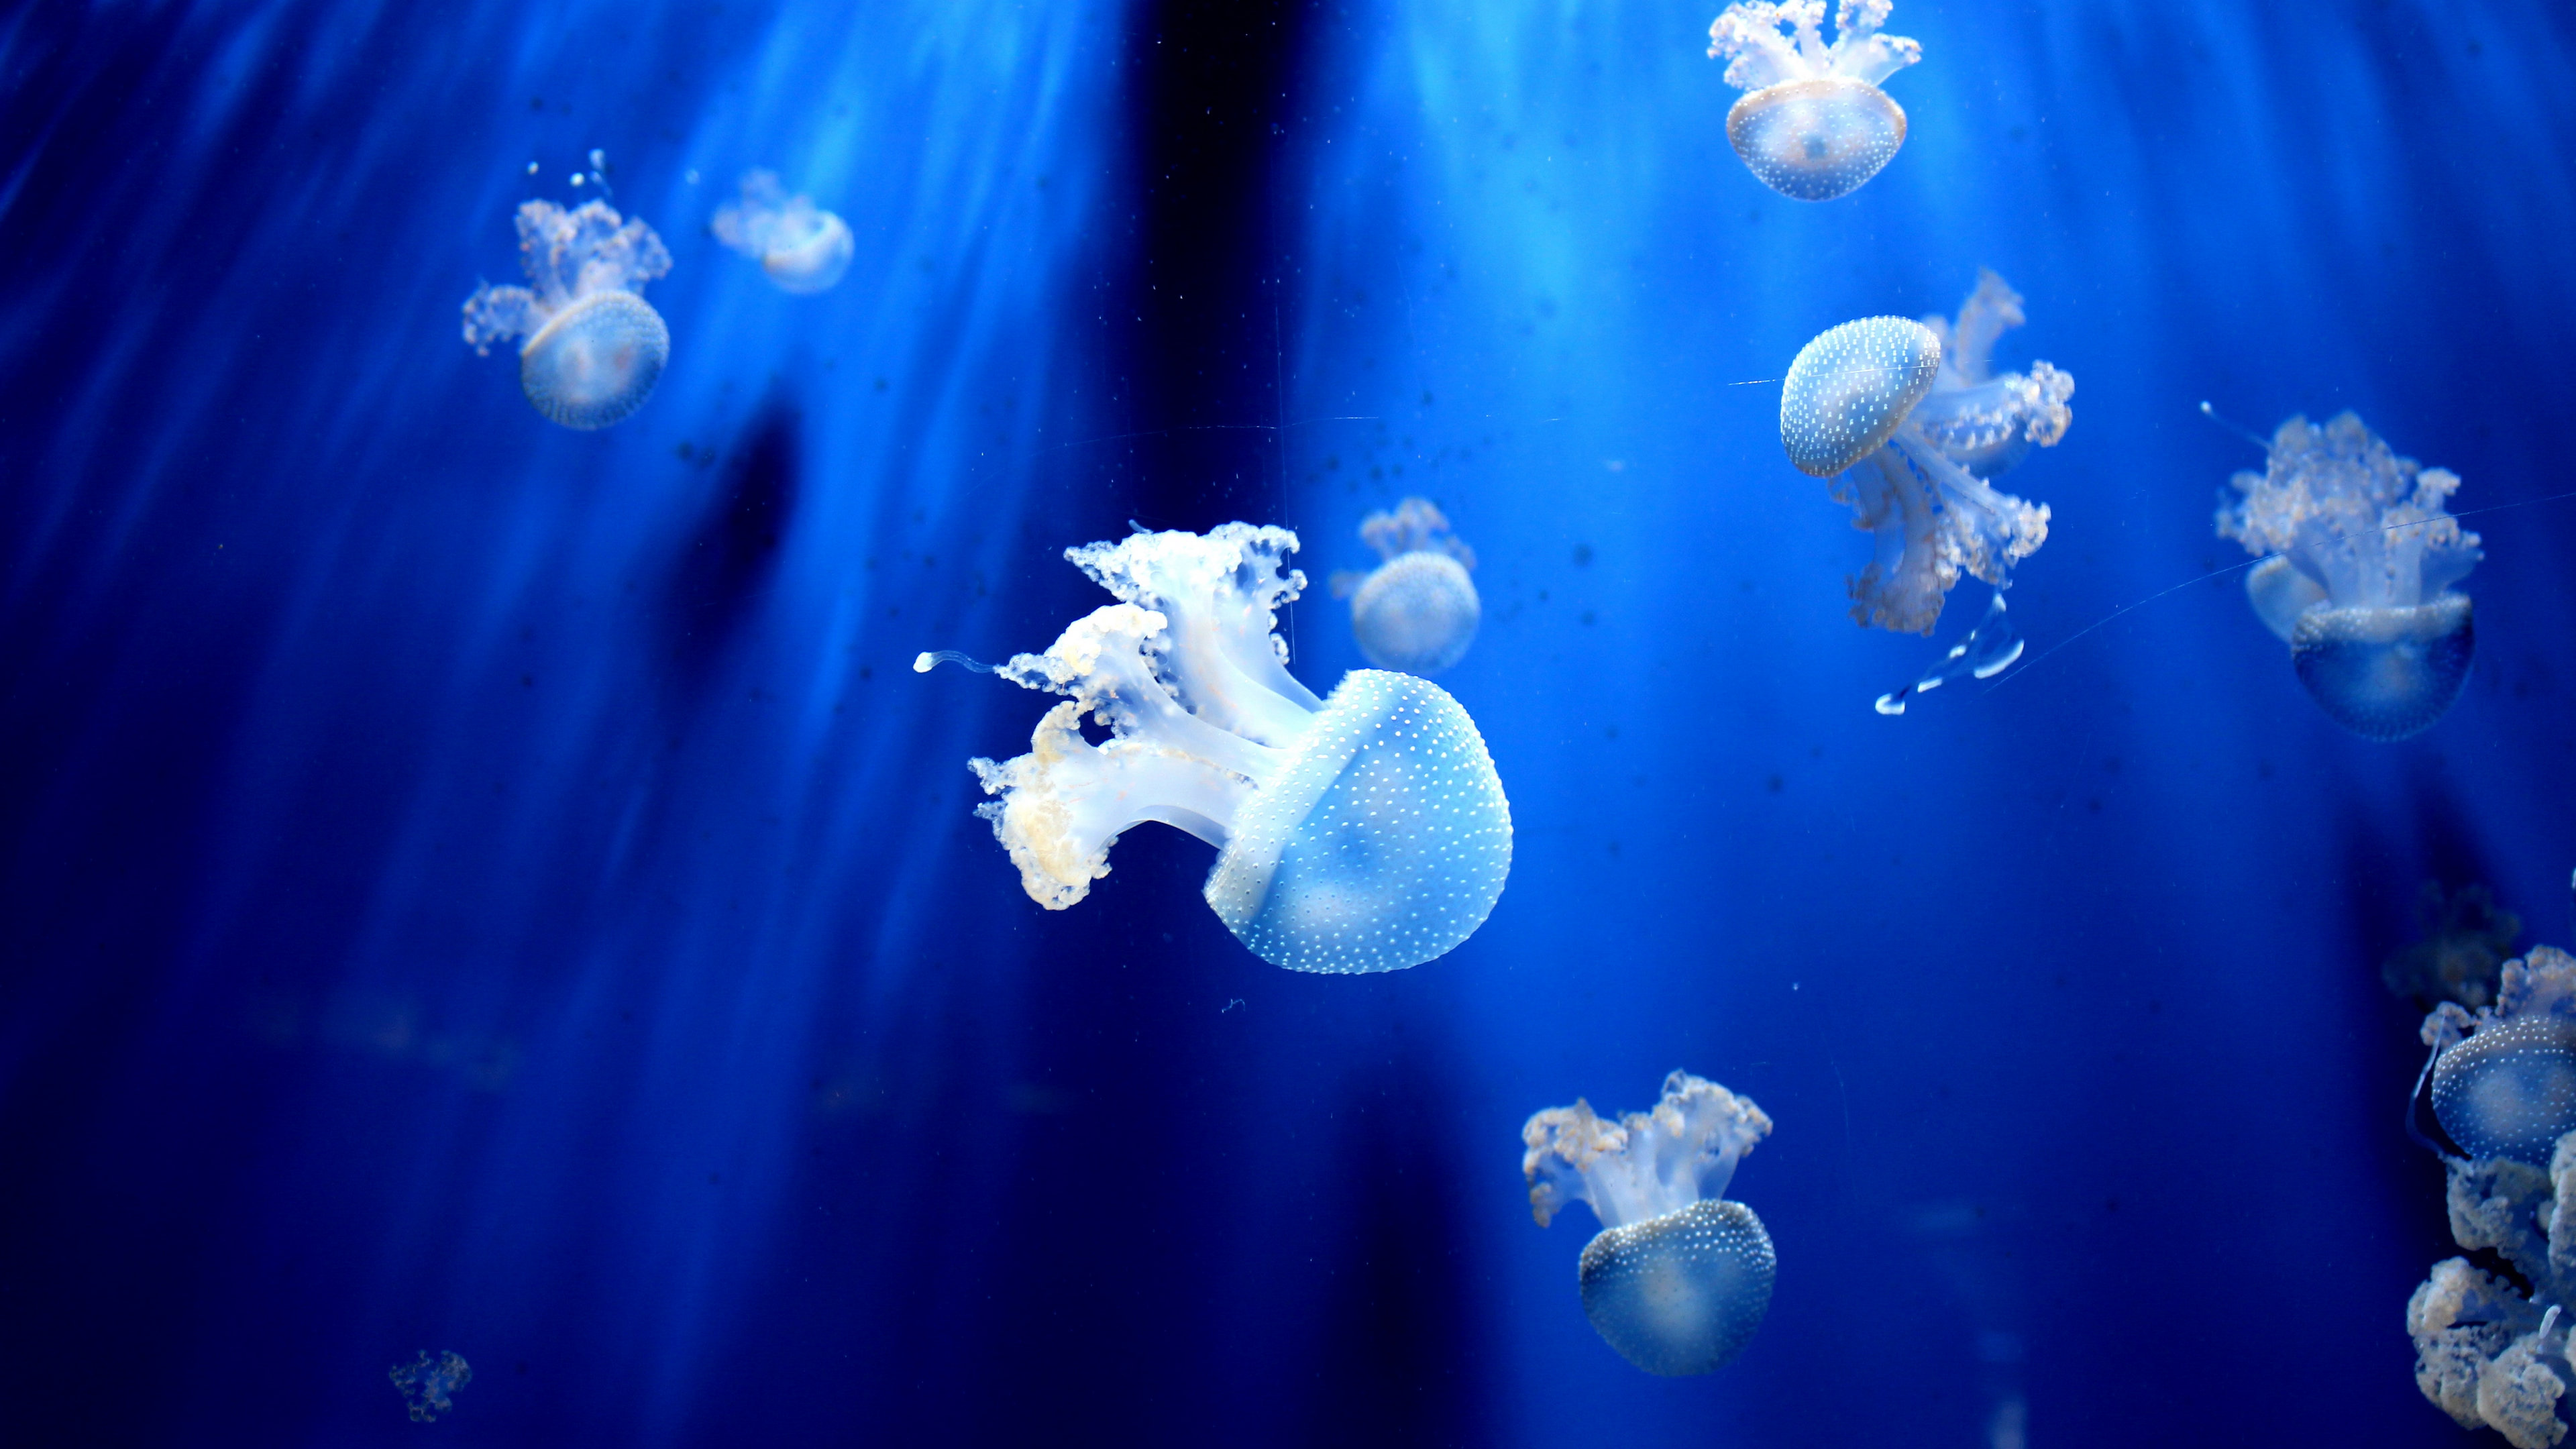 海底色彩斑斓的水母,形态各异,美轮美奂!